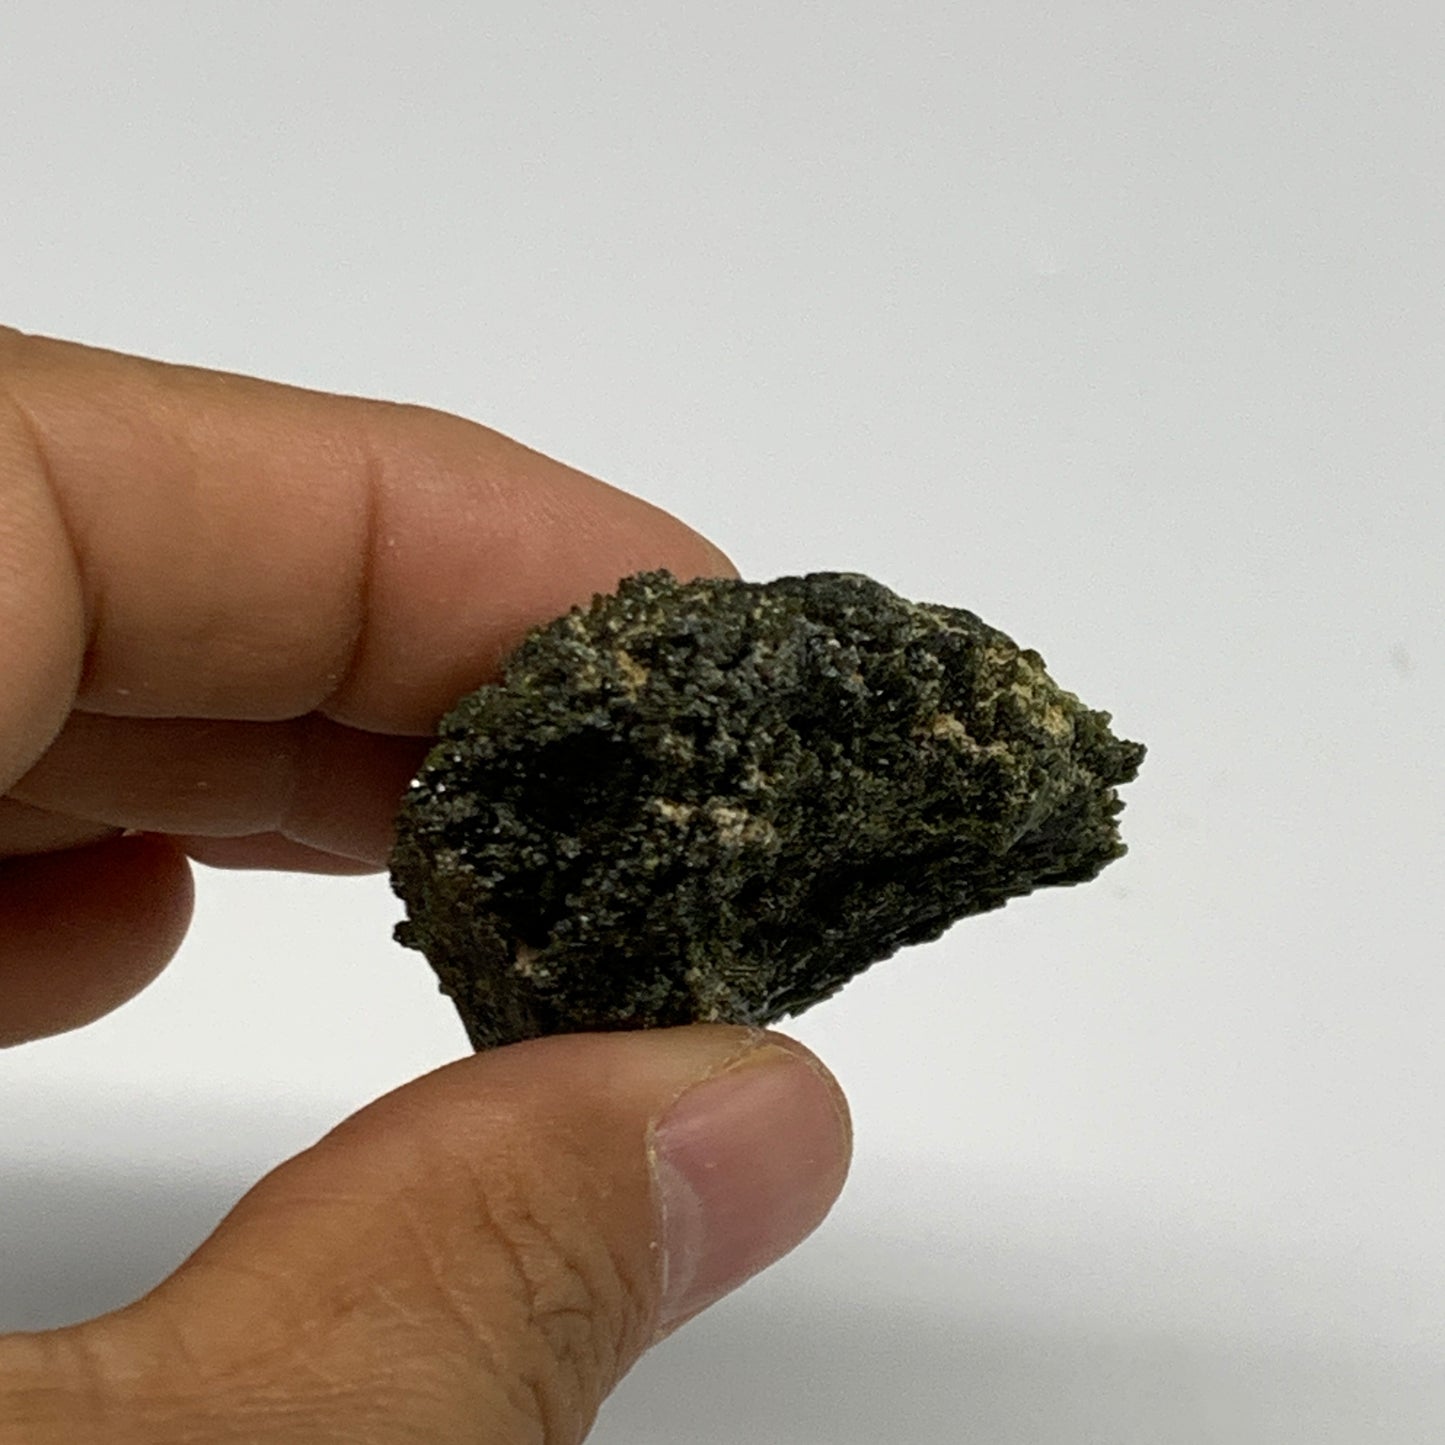 45.4g,2.5"x1.5"x0.6",Green Epidote Custer/Leaf Mineral Specimen @Pakistan,B27603